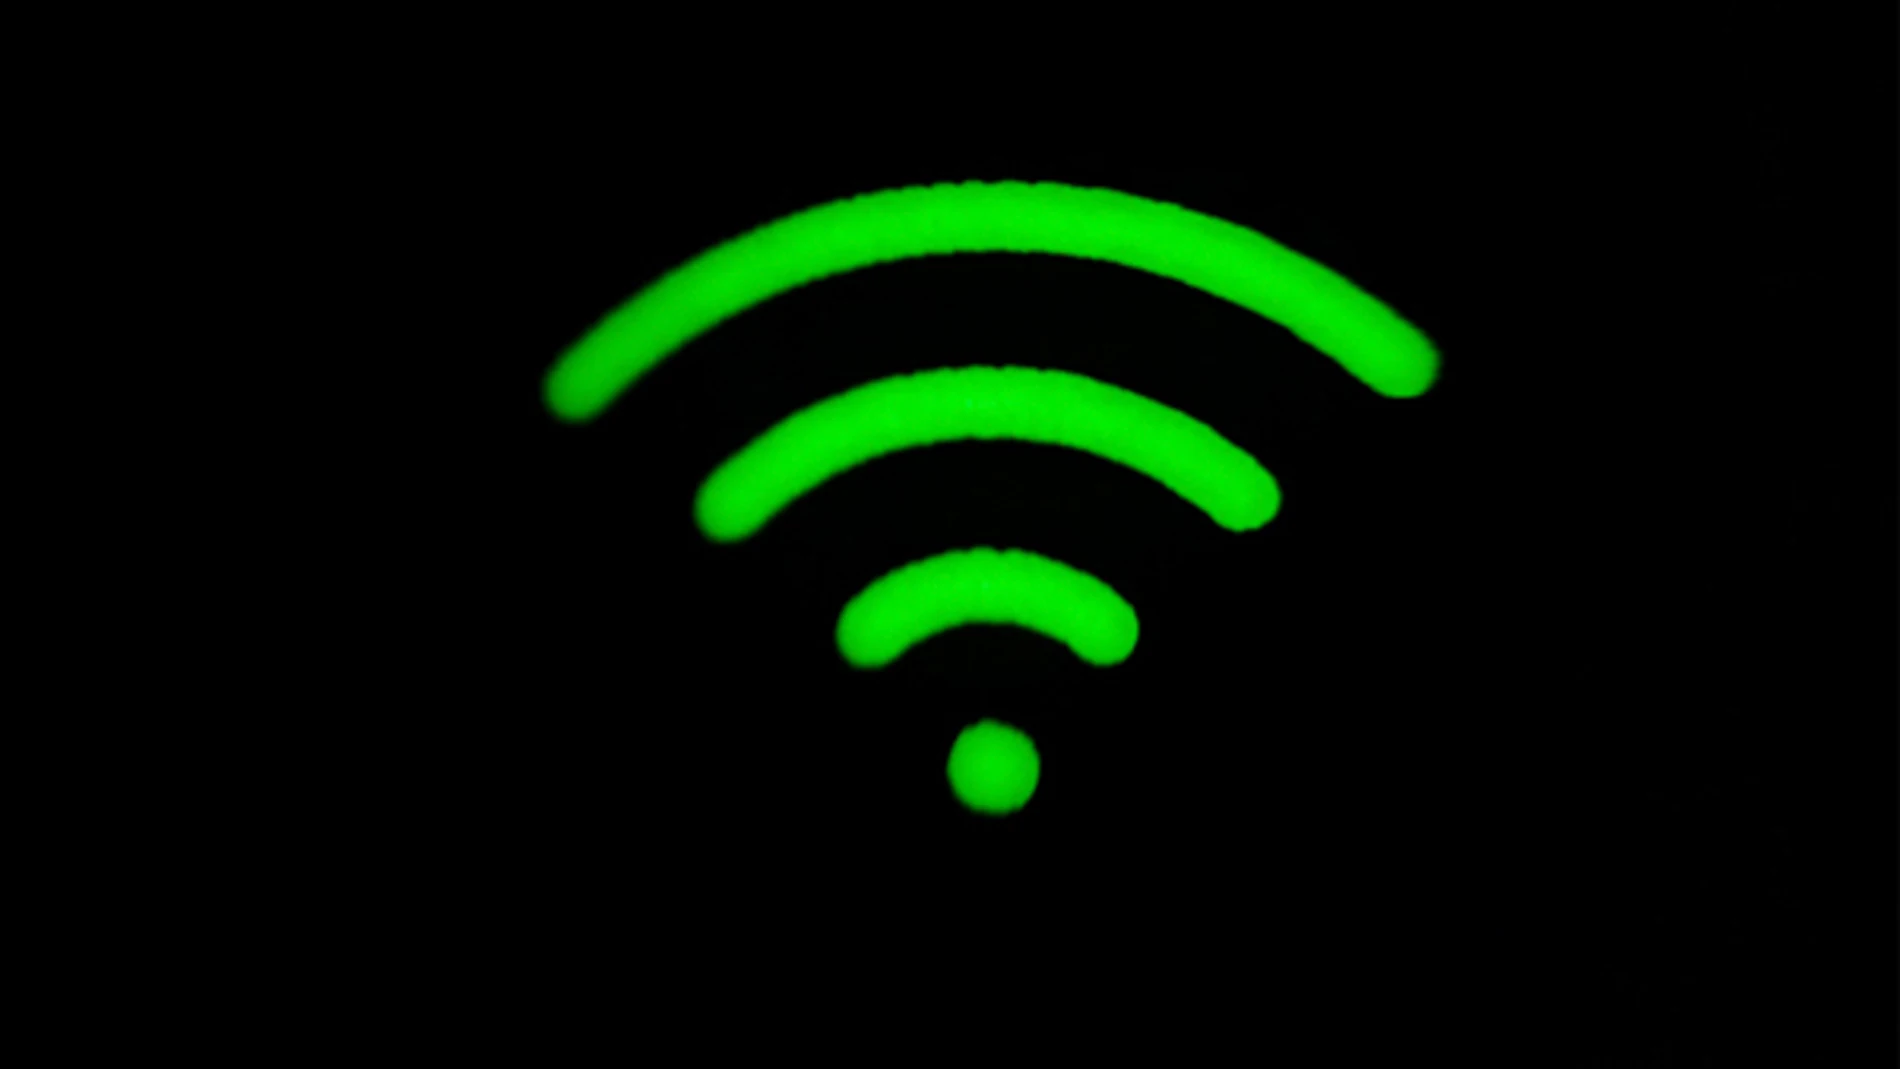 El símbolo de Wifi no refleja realmente como se propaga la señal inalámbrica.